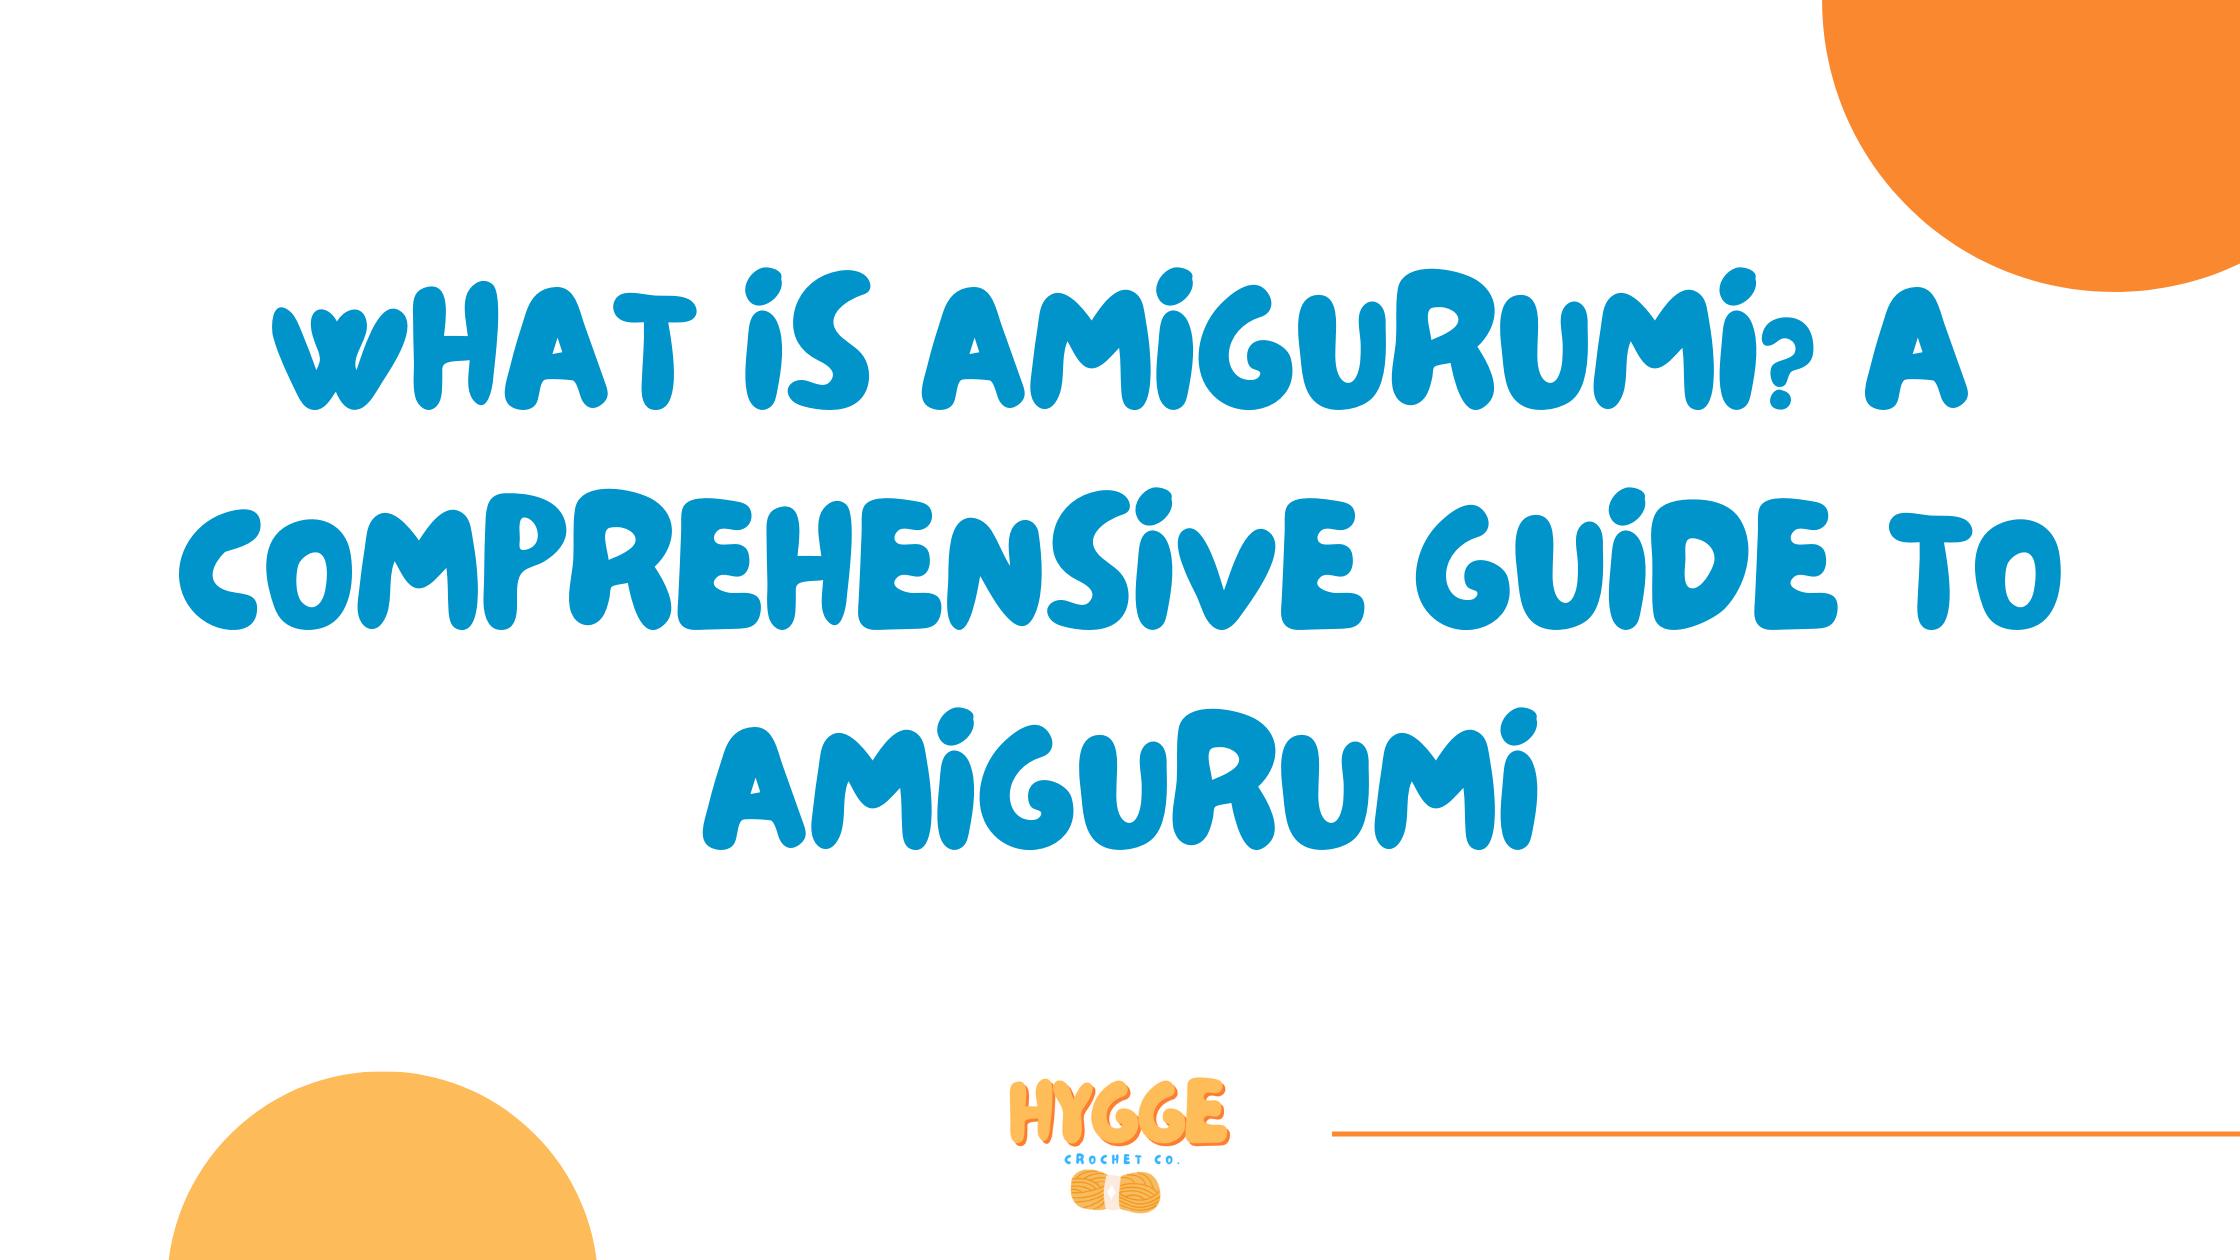 What is Amigurumi? A Comprehensive Guide to Amigurumi